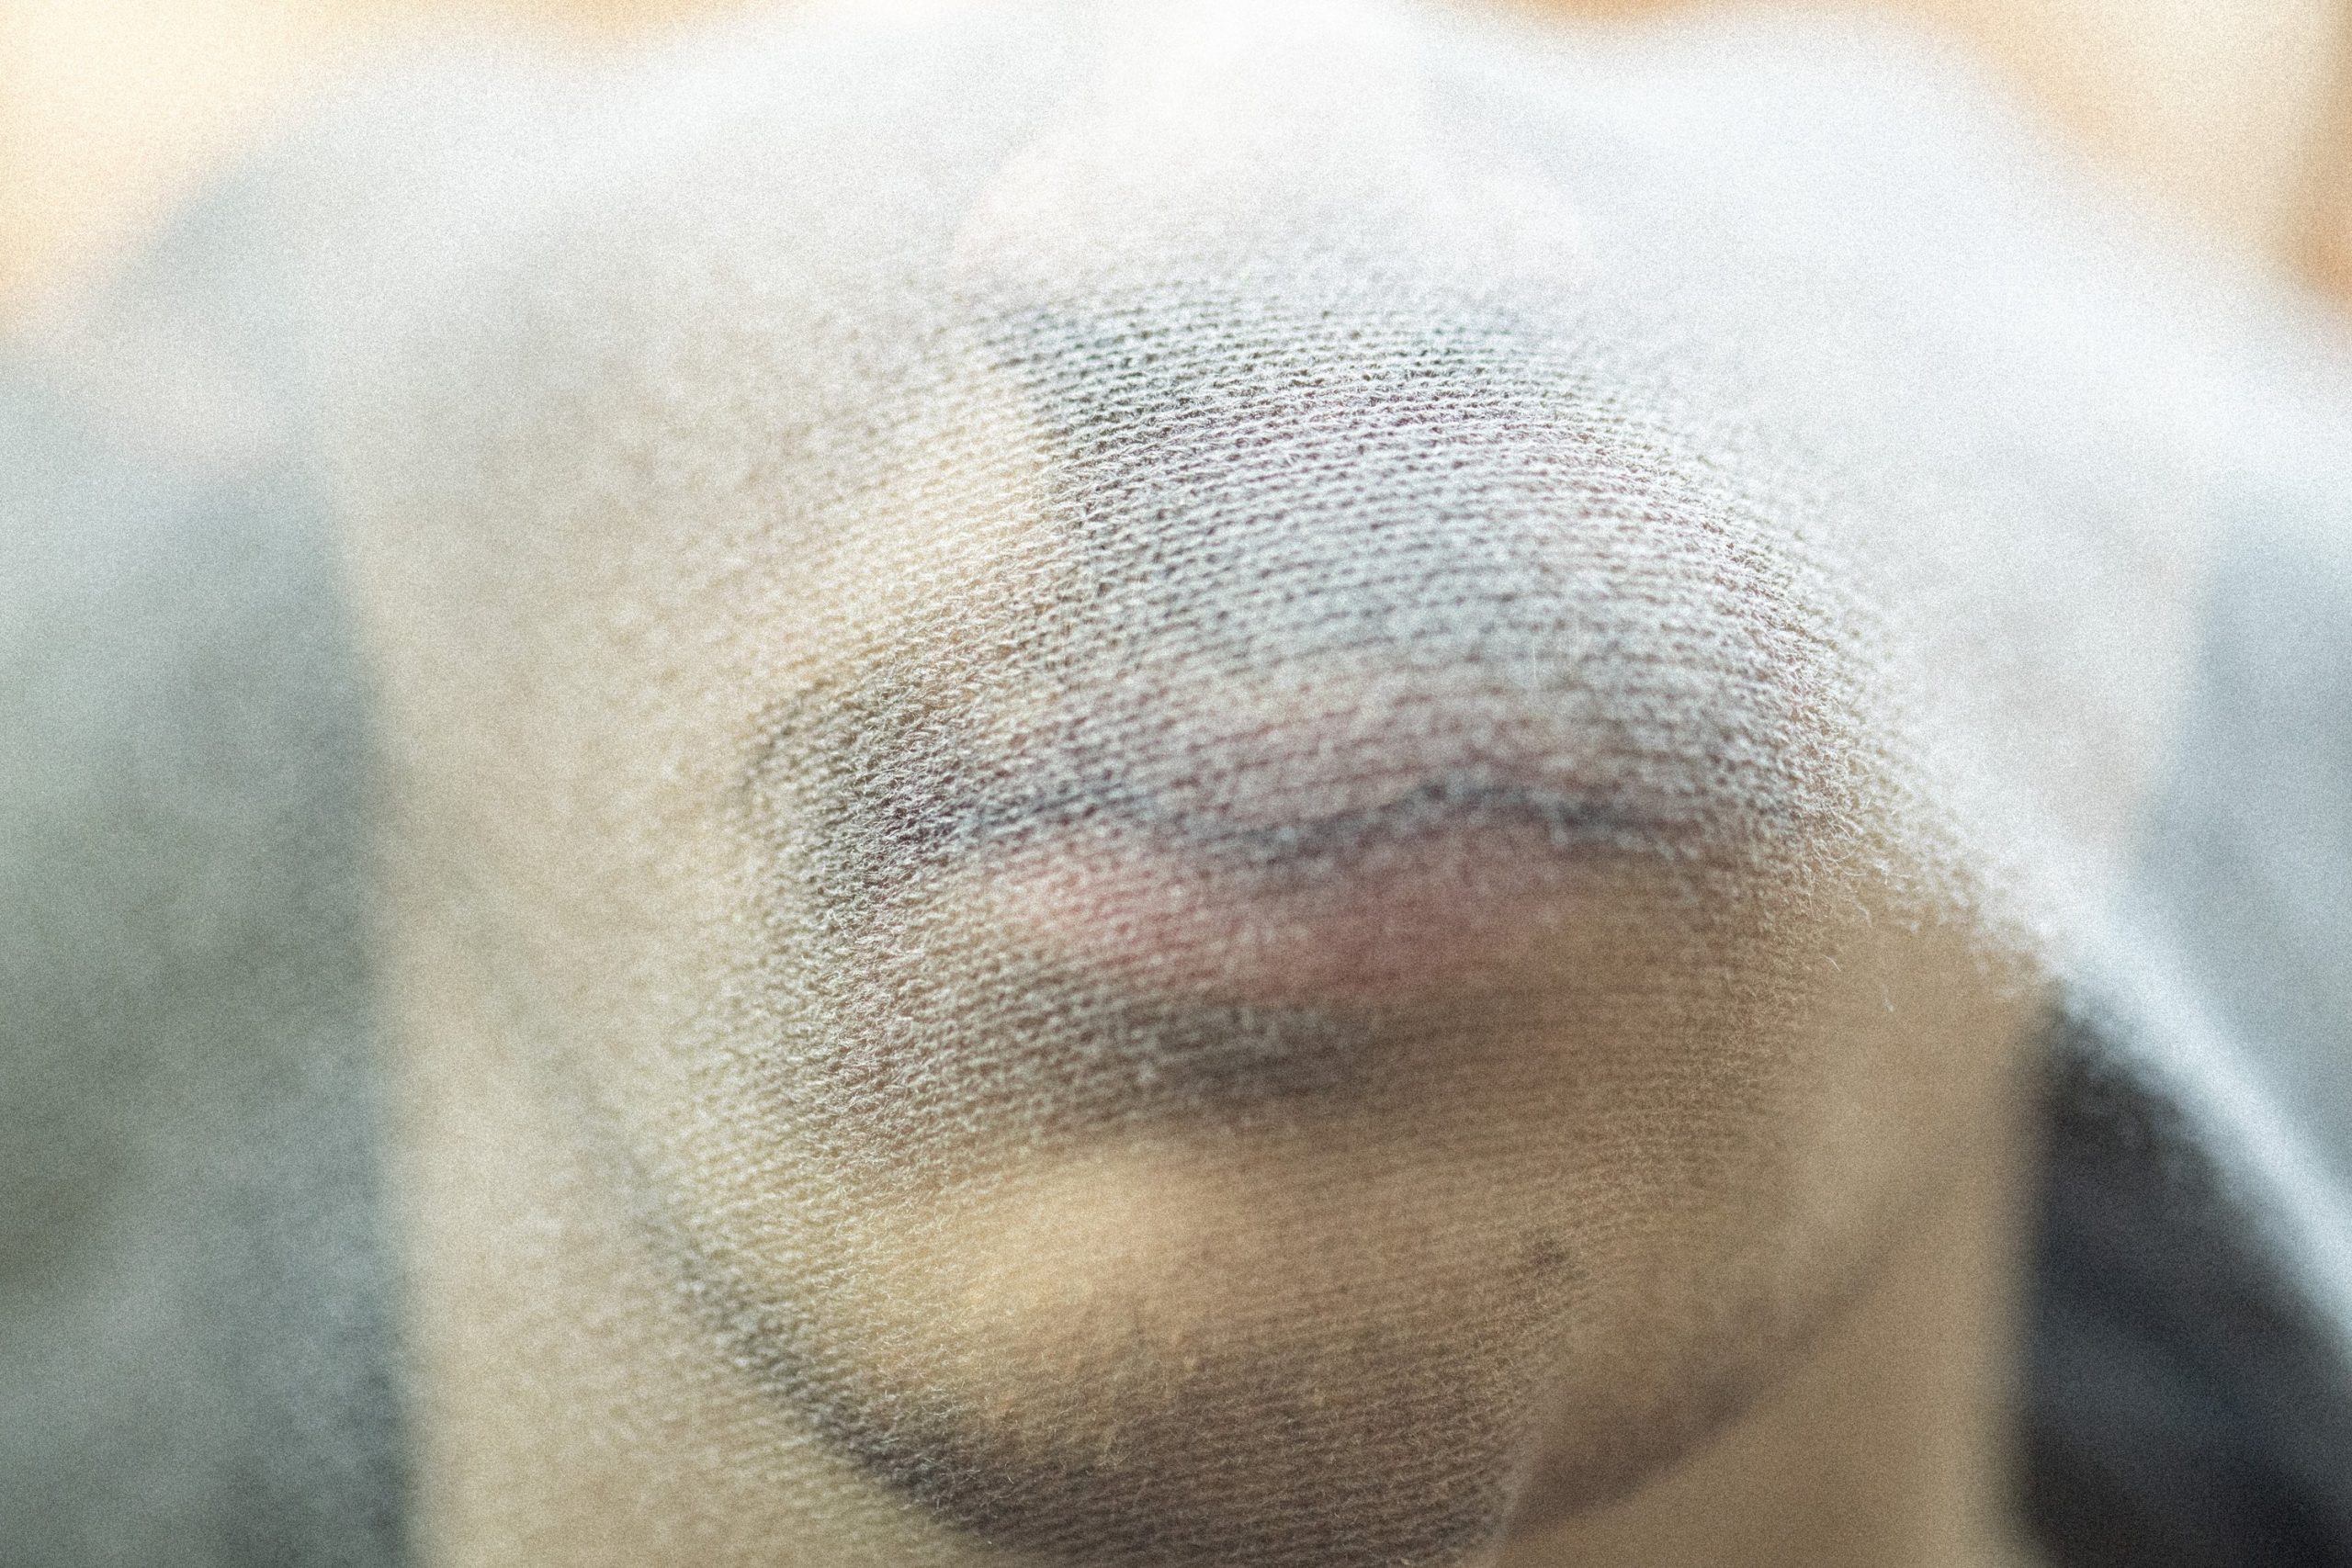 Nase und Mund eines männlichen Gesichts werden von einem Musselintuch verdeckt.